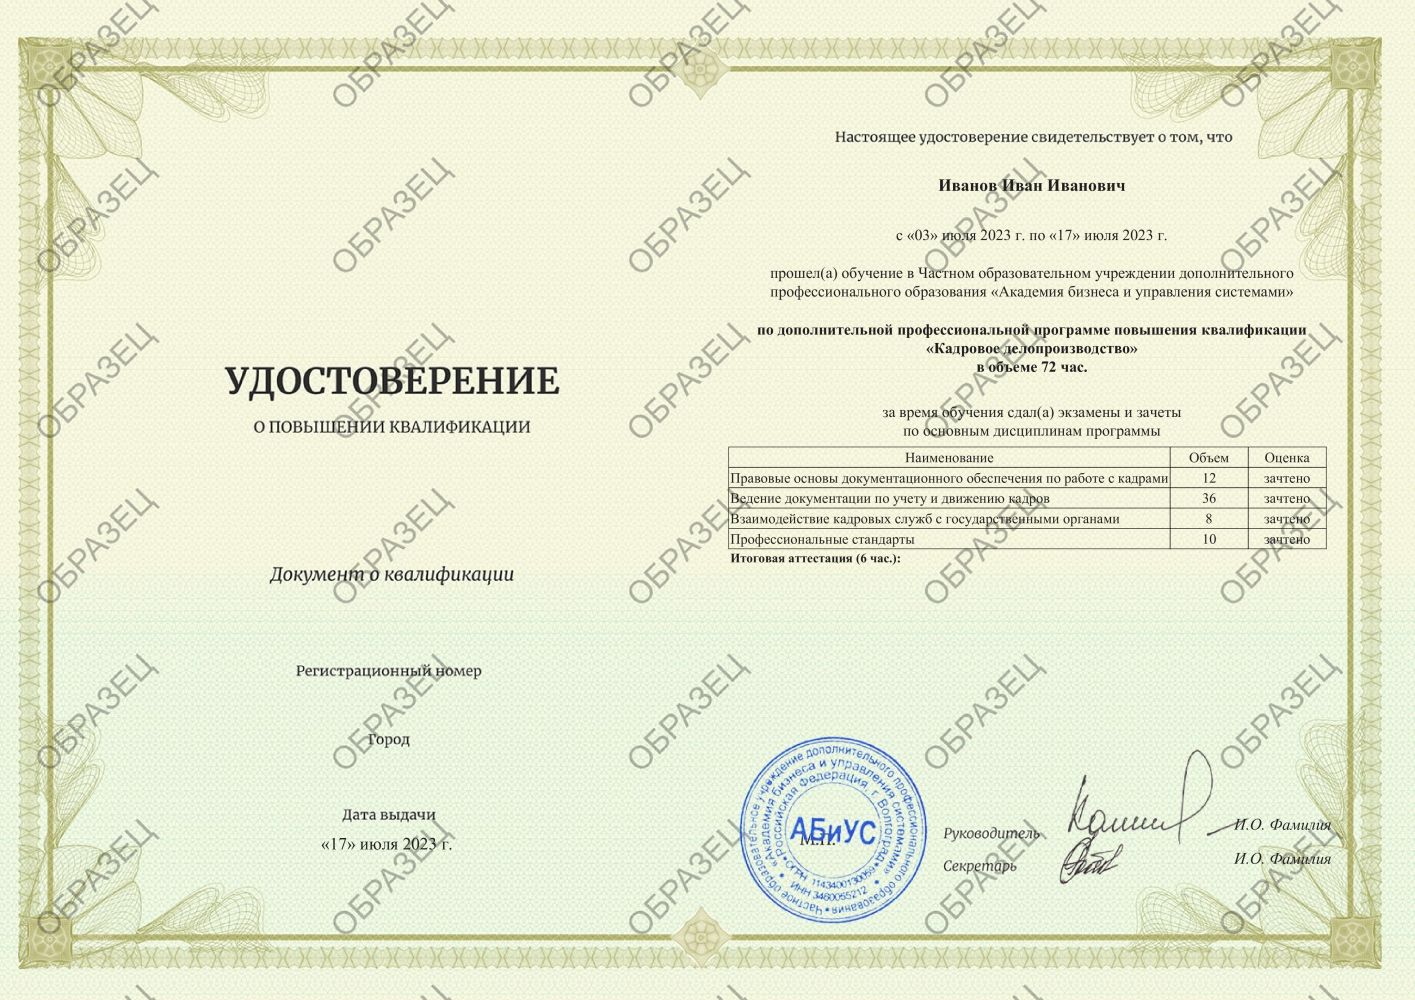 Удостоверение Кадровое делопроизводство 72 часа 5063 руб.